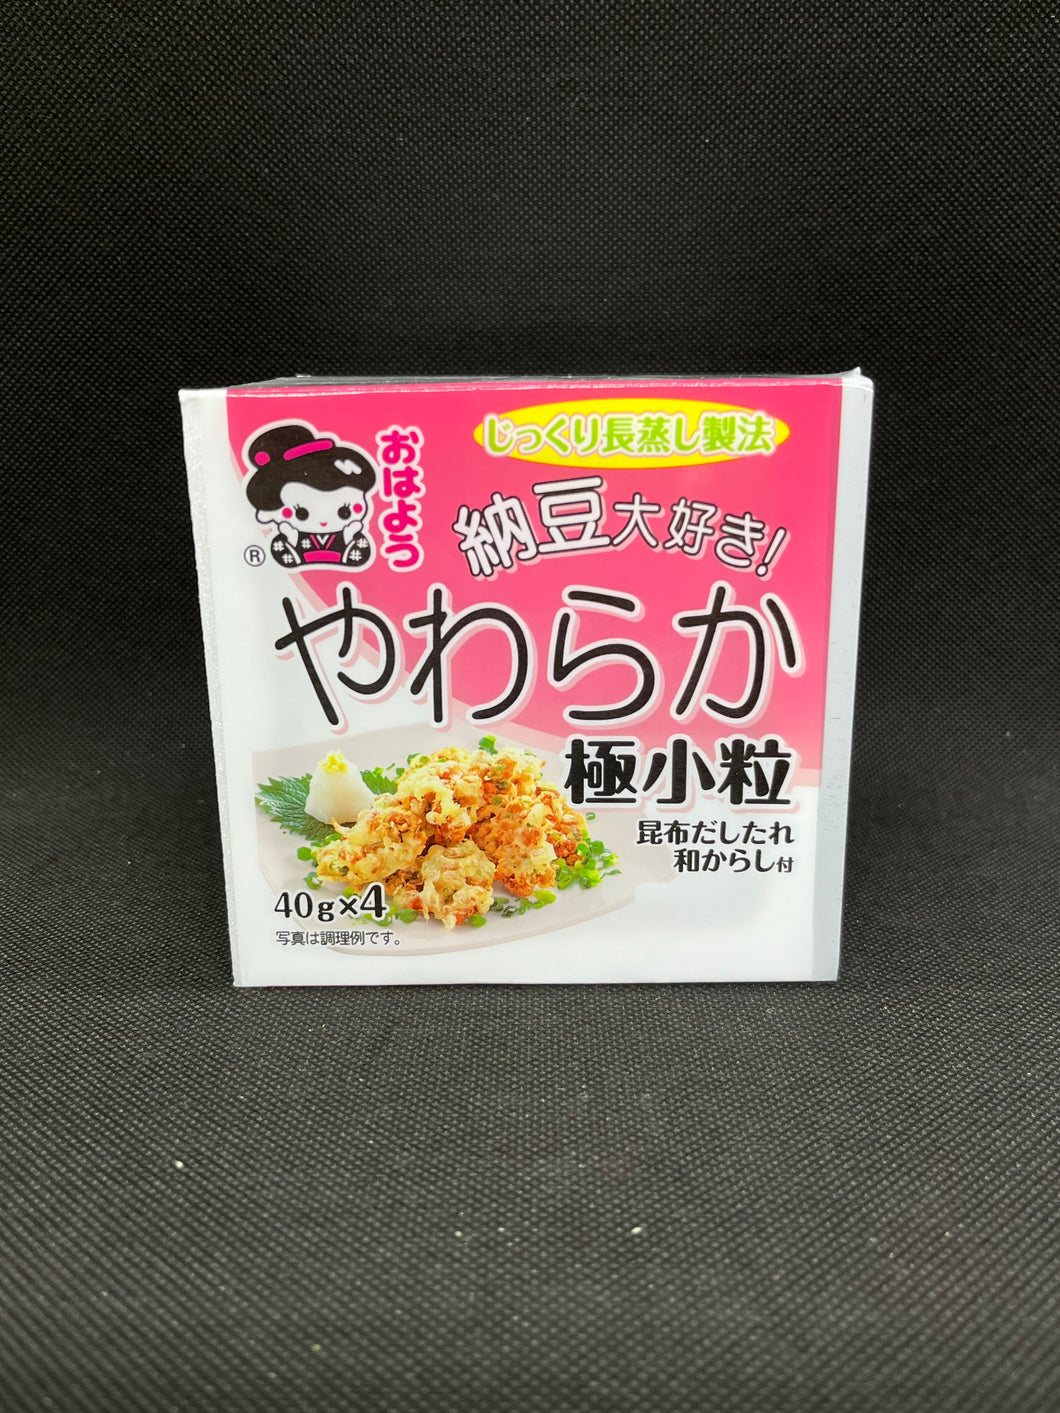 山田 納豆だいすき 極小粒納豆  (40g x 4パック)